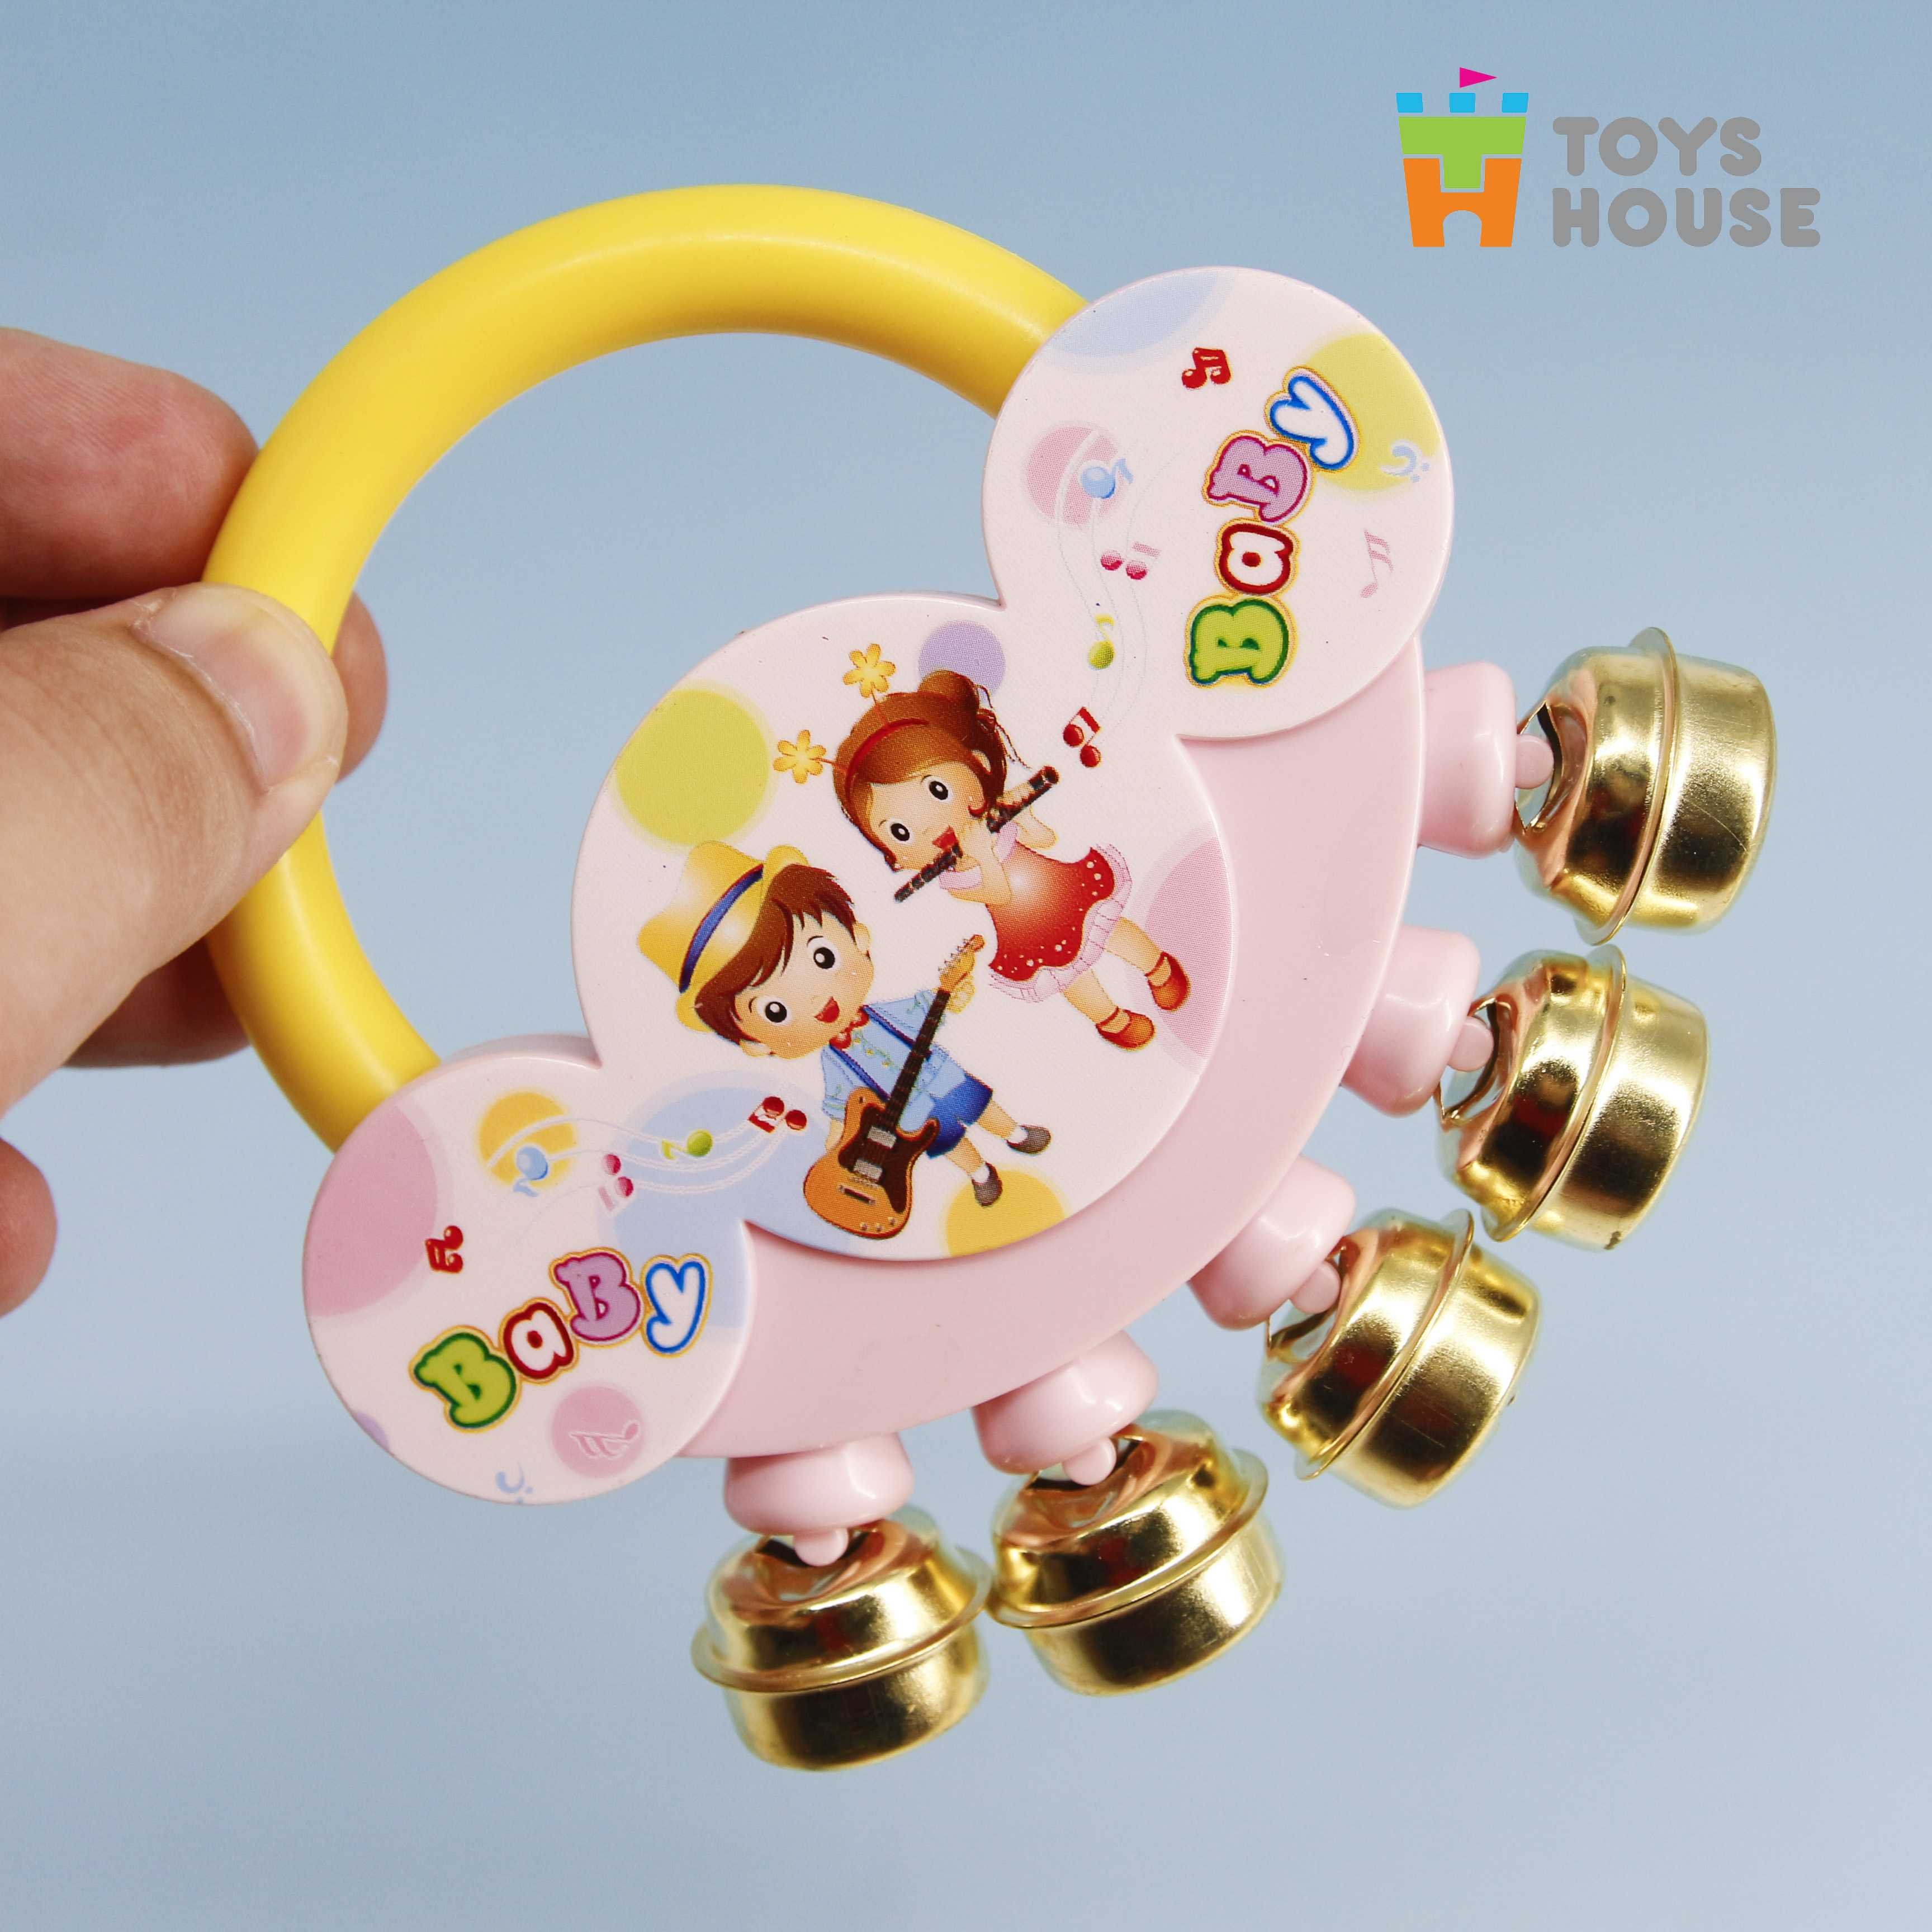 set đồ chơi xúc xắc, lục lạc, kèn, trống toyshouse dành cho bé từ sơ sinh 733 - giúp bé phát triển thị giác, thính giác 5